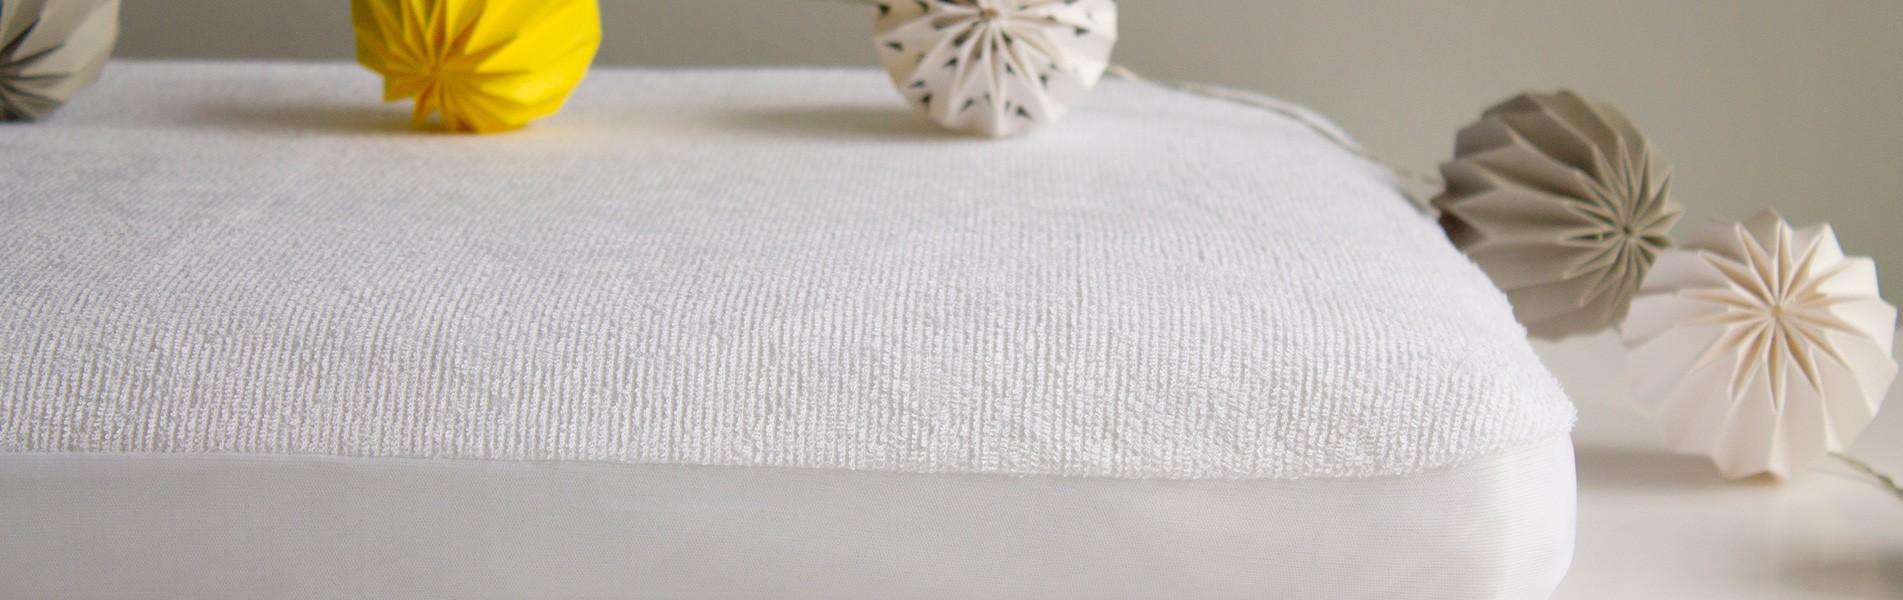 Como escolher um lençol para o seu colchão?